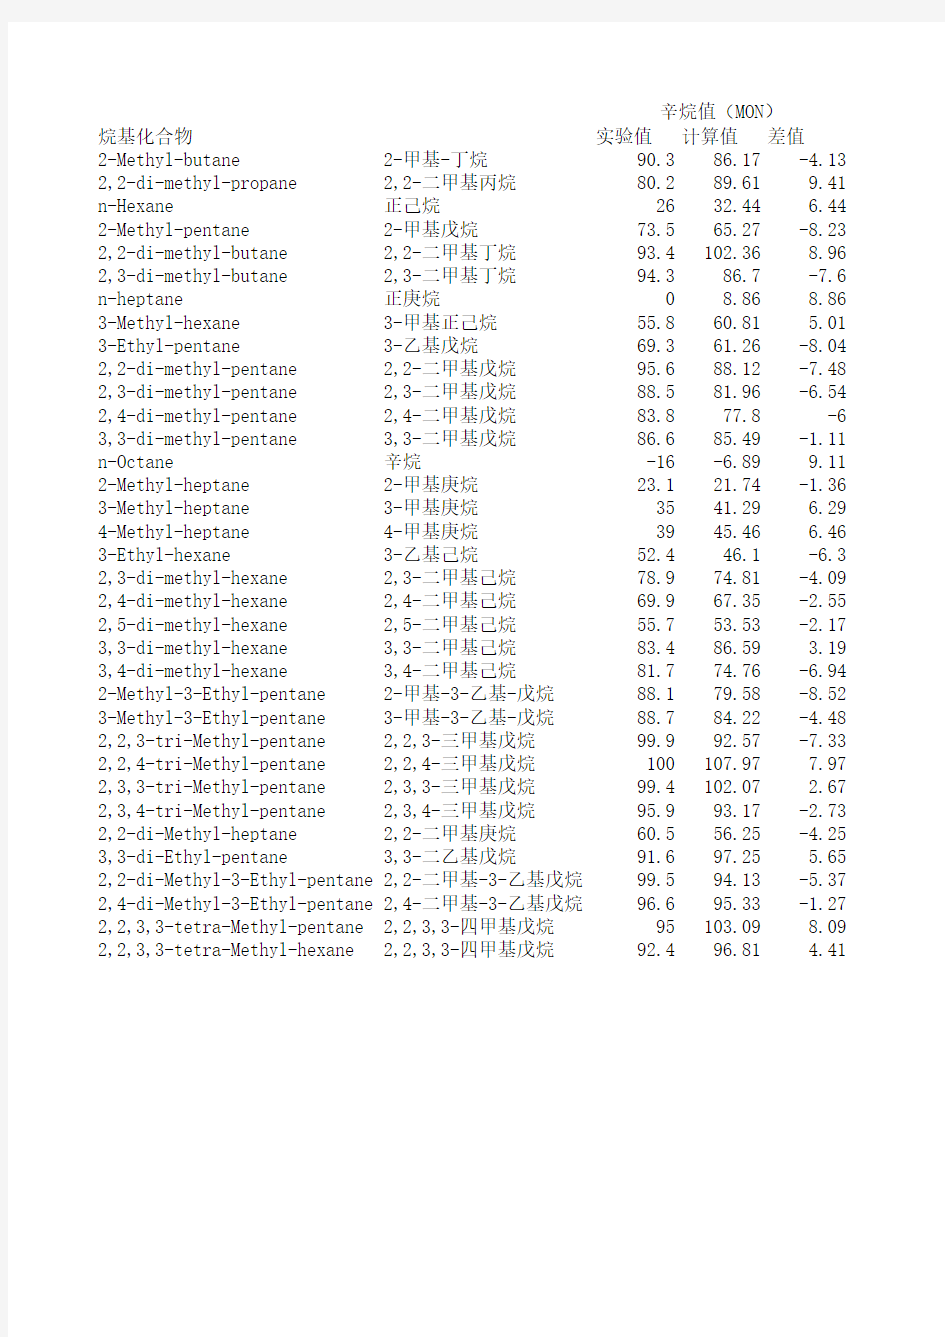 最新35种烷烃实测辛烷值和计算值表